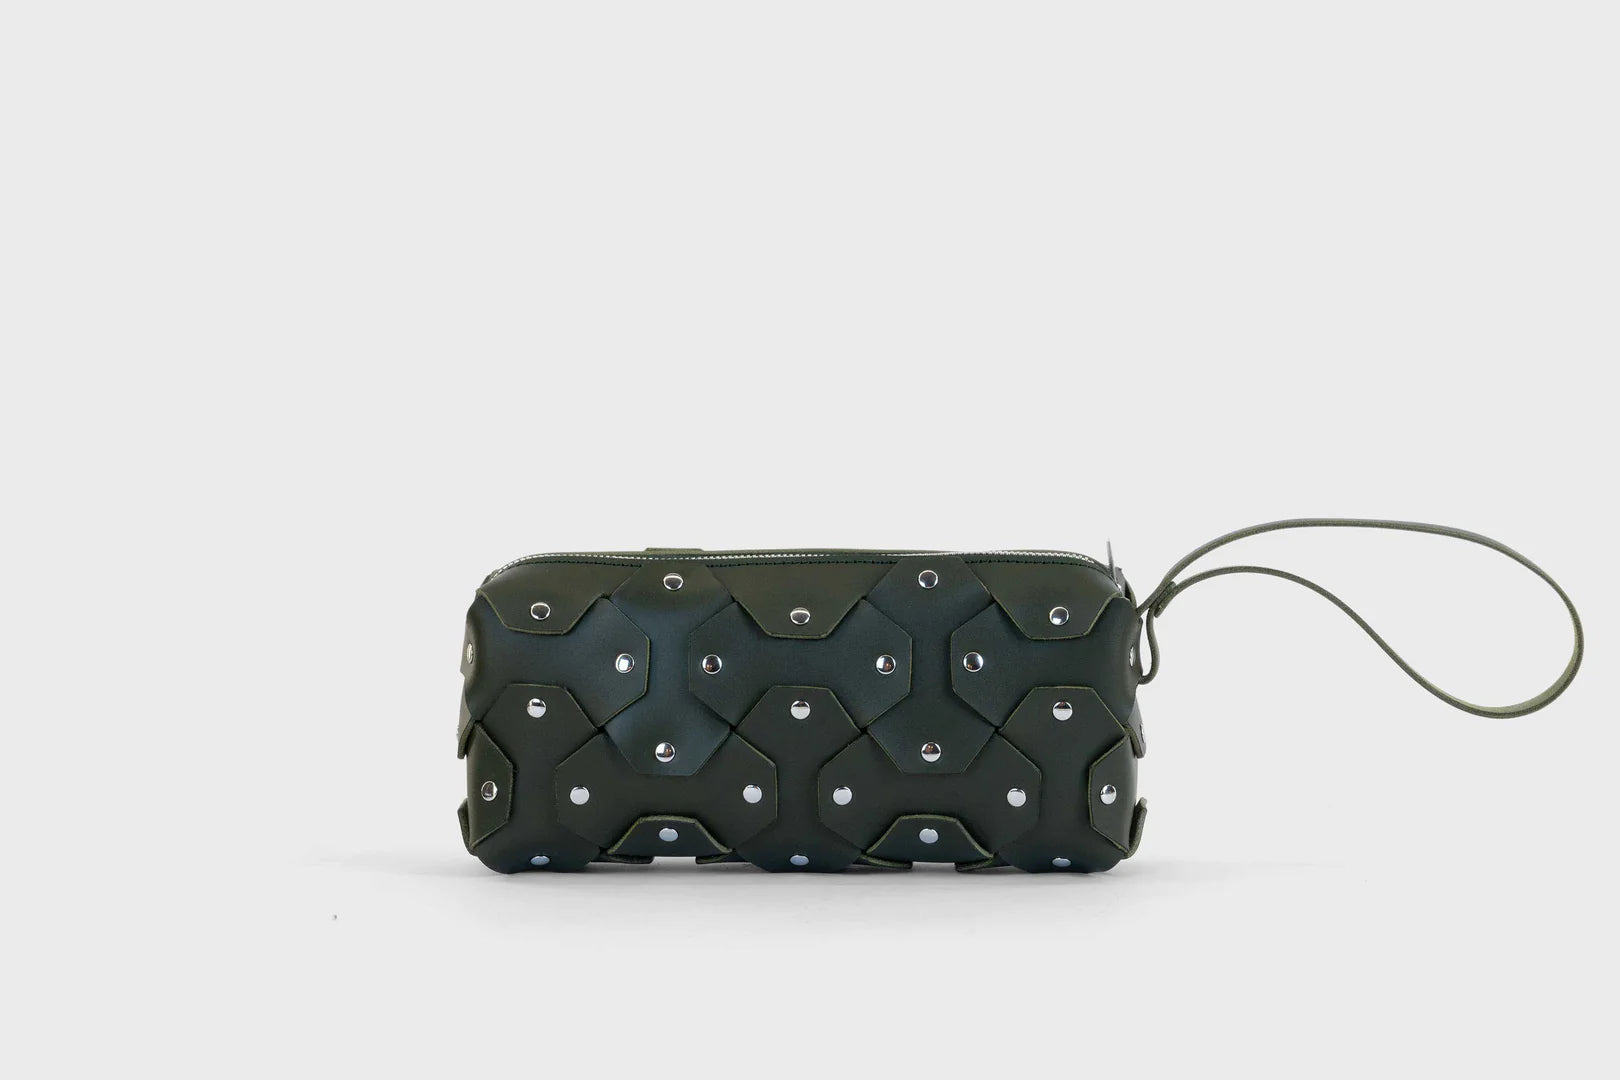 olive green leather handbag manuel dreesmann atelier madre barcelona